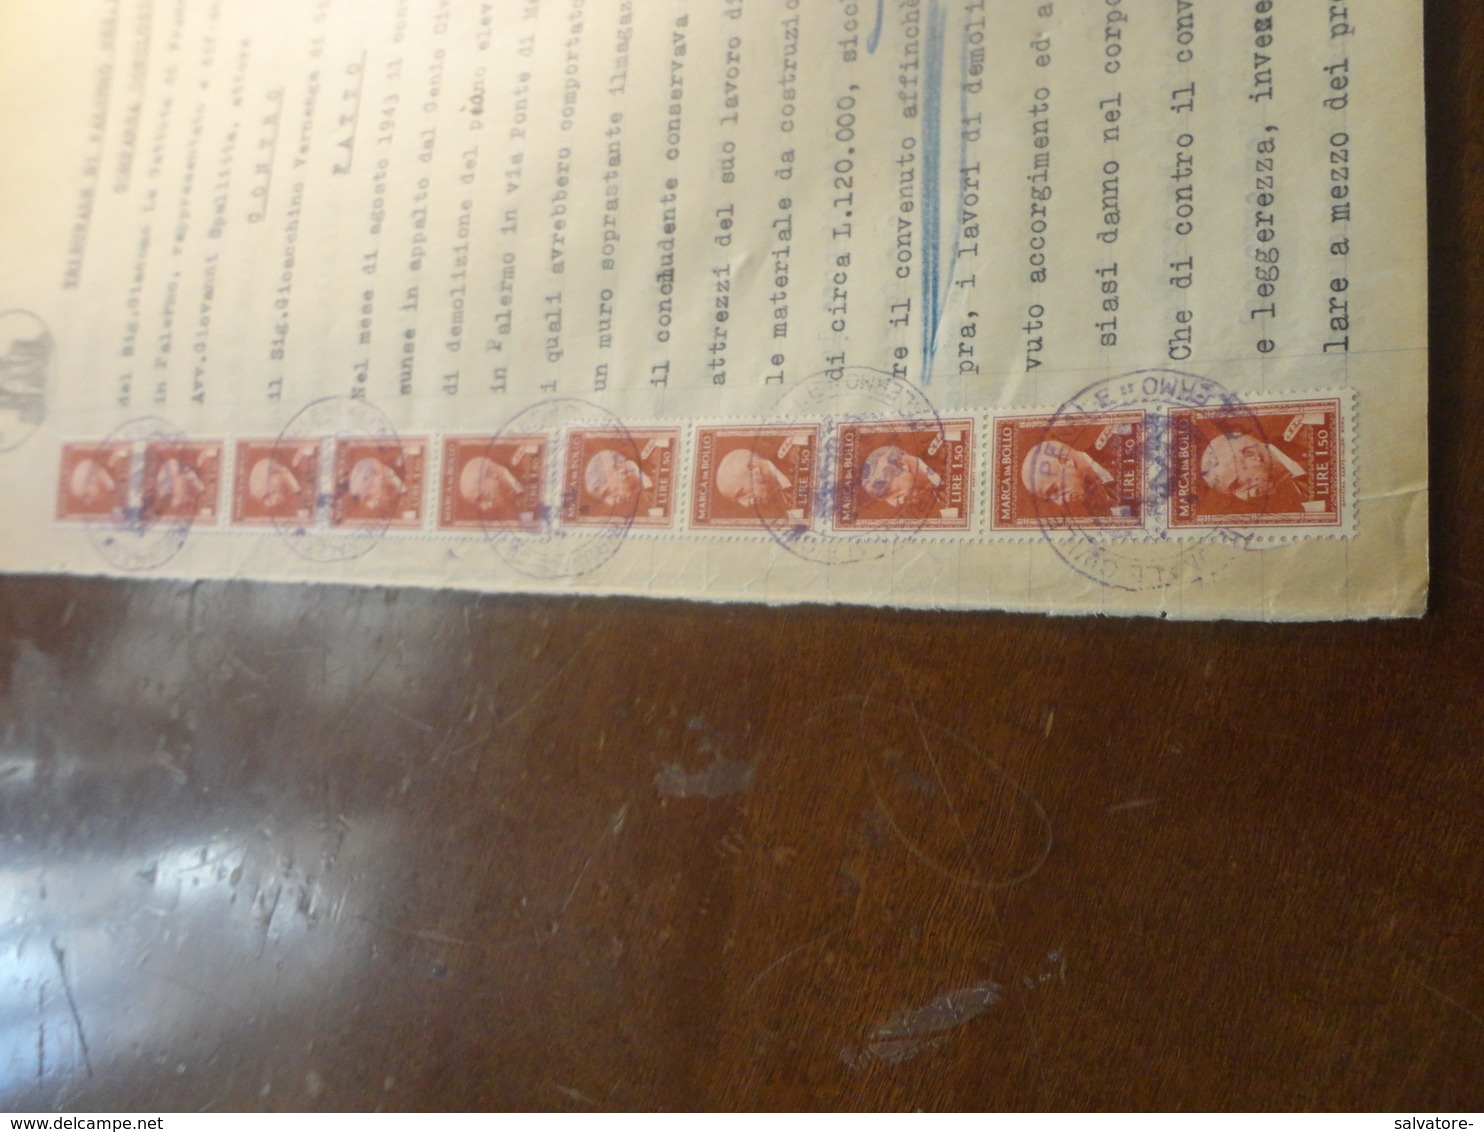 CARTA BOLLATA LIRE 24 CON AGGIUNTA 32  MARCHE DA BOLLO DA LIRE 1,50 - 1945 - Revenue Stamps